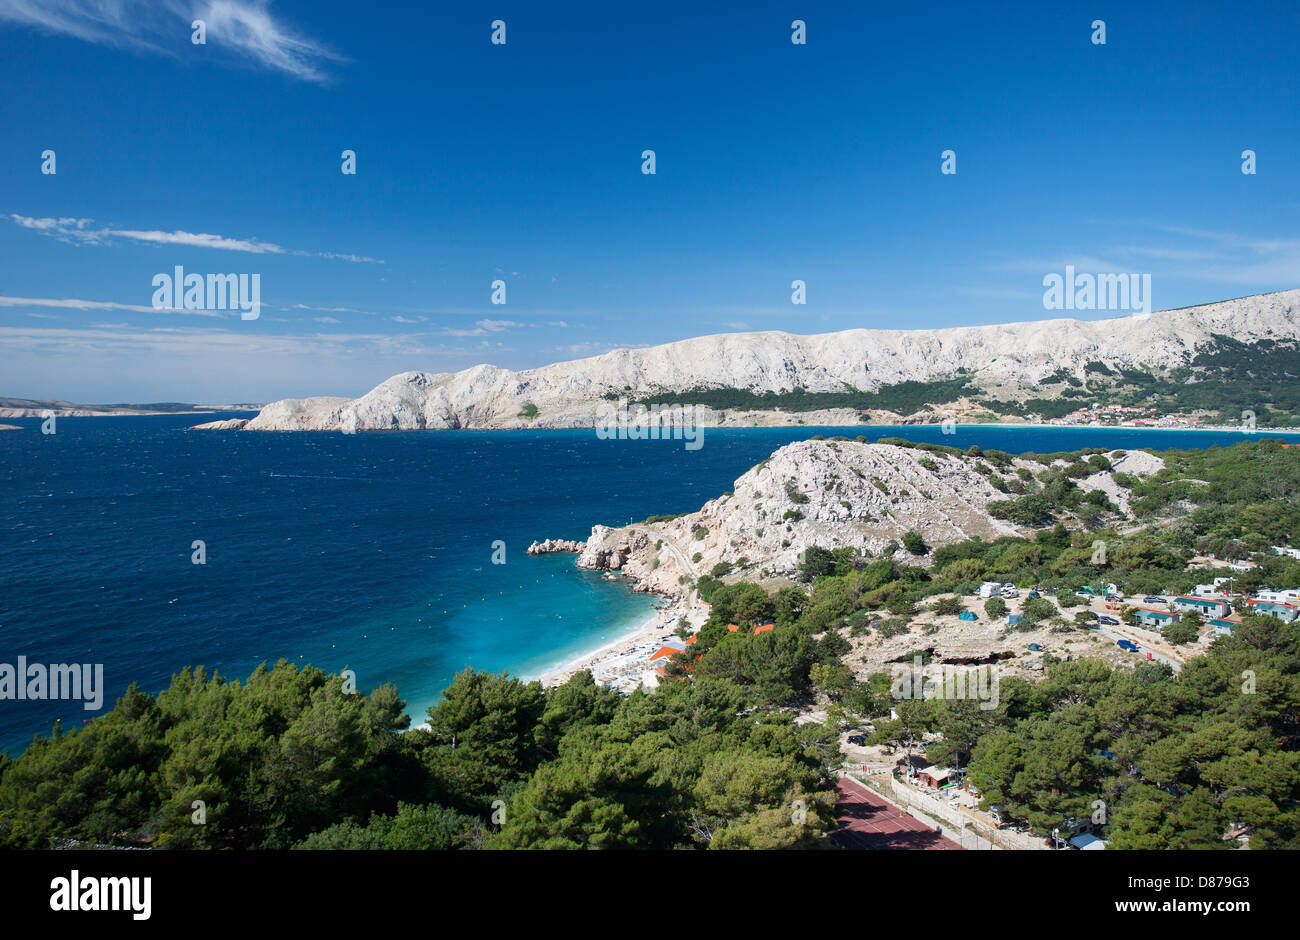 La Croatie, vue de Bunculuka beach à l'île de Krk Banque D'Images